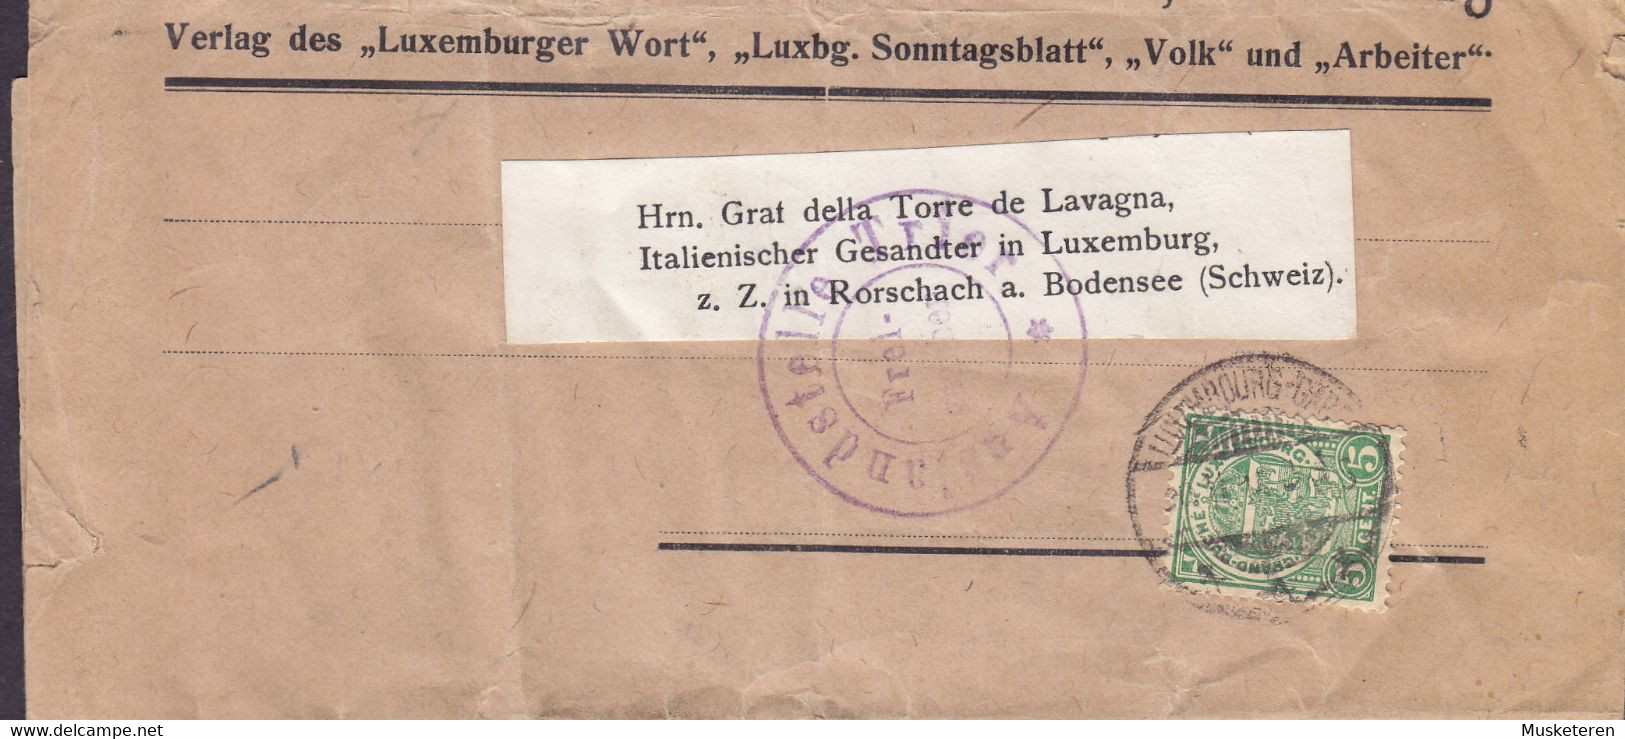 Luxembourg DRUCKEREI ST. PAULUS Wrapper Streifband Bande Journal LUXEMBOURG-GARE 1915 RORSCHACH Suisse CENSOR - 1907-24 Abzeichen